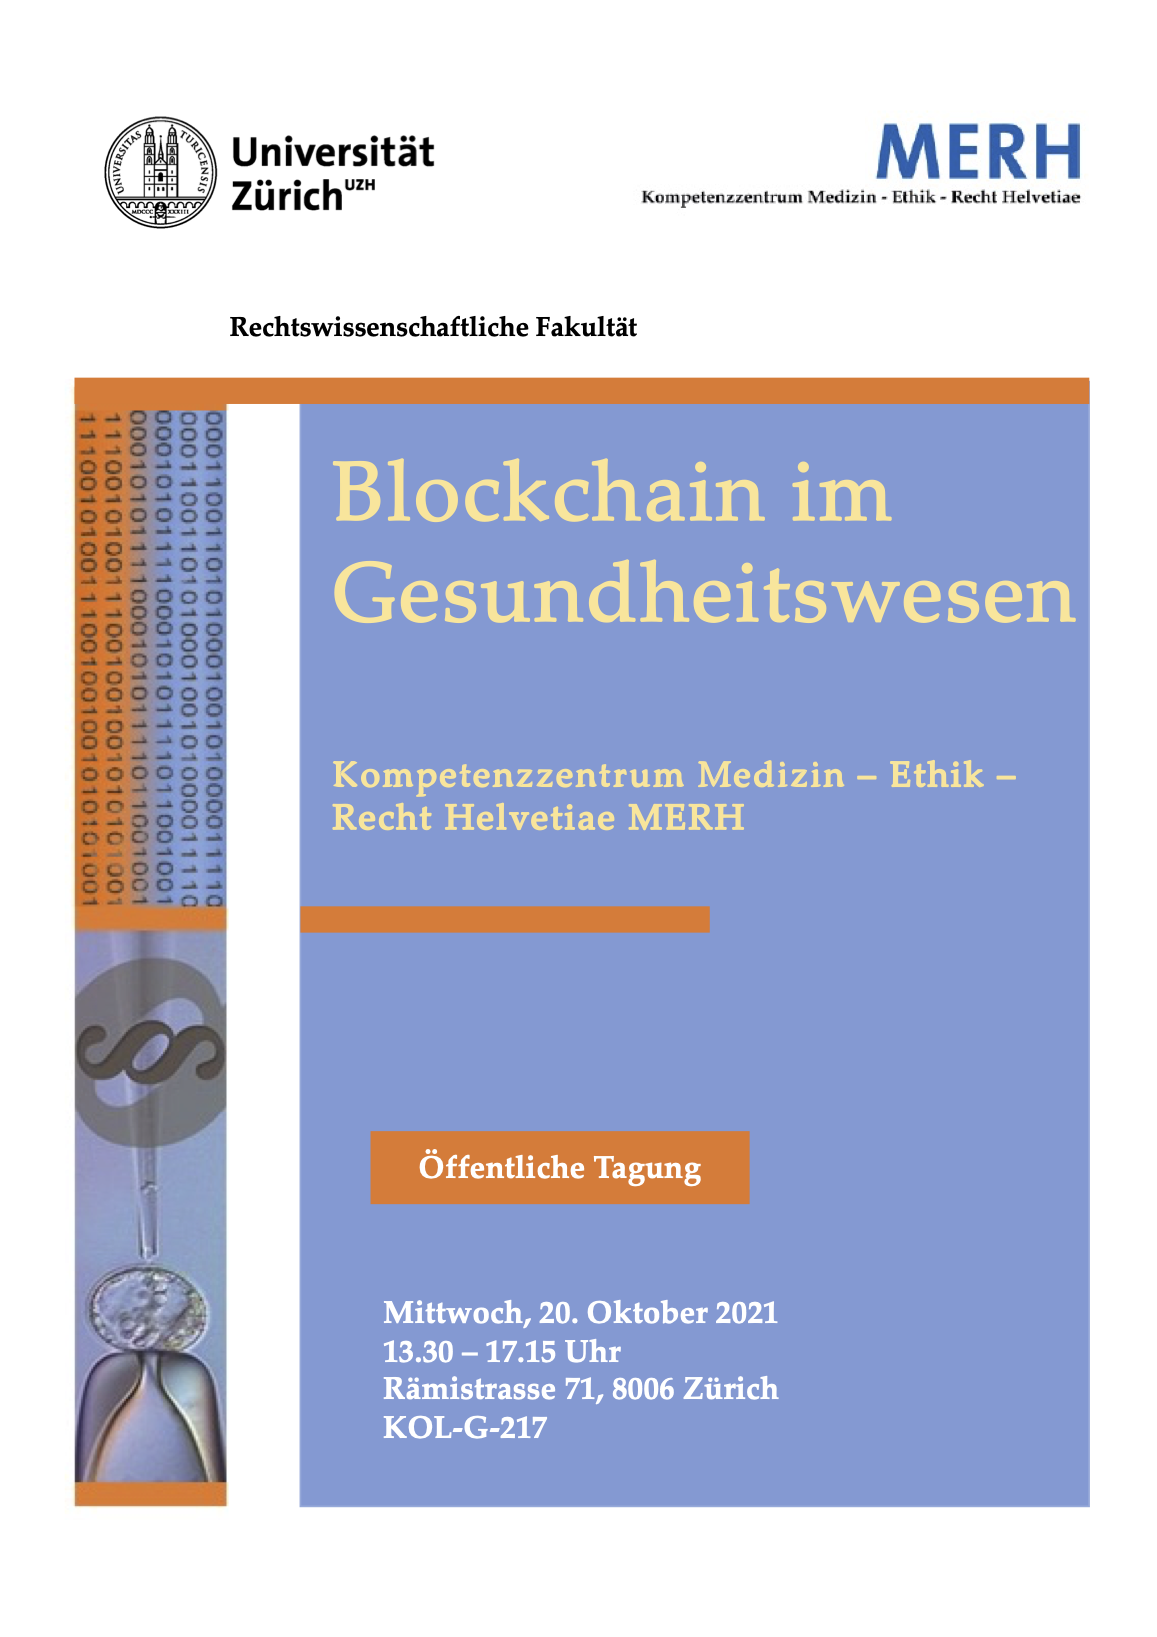 Titelbild Flyer Tagung Blockchain im Gesundheitswesen